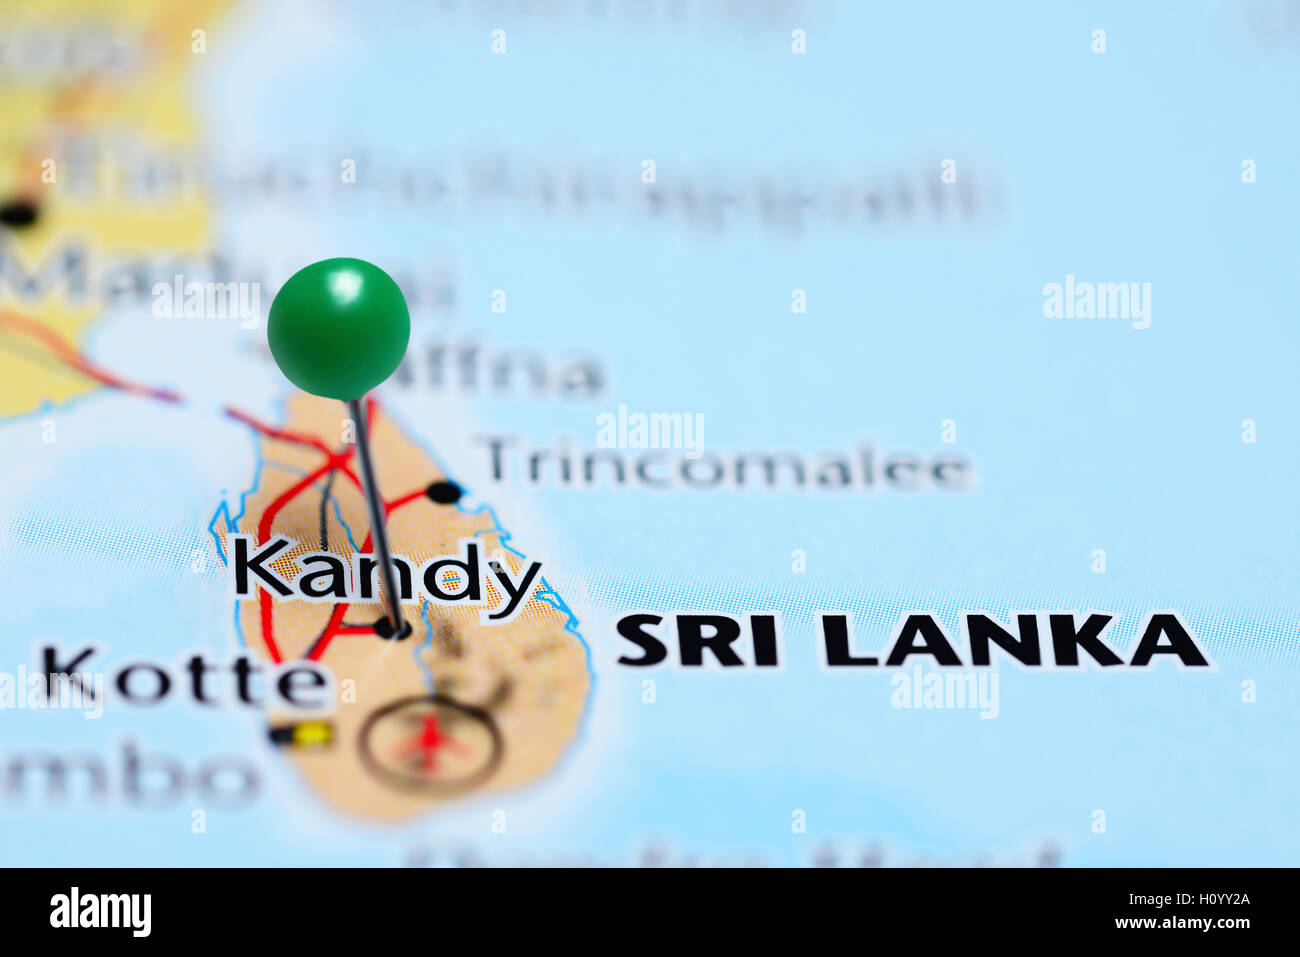 Kandy pinned on a map of Sri Lanka Stock Photo